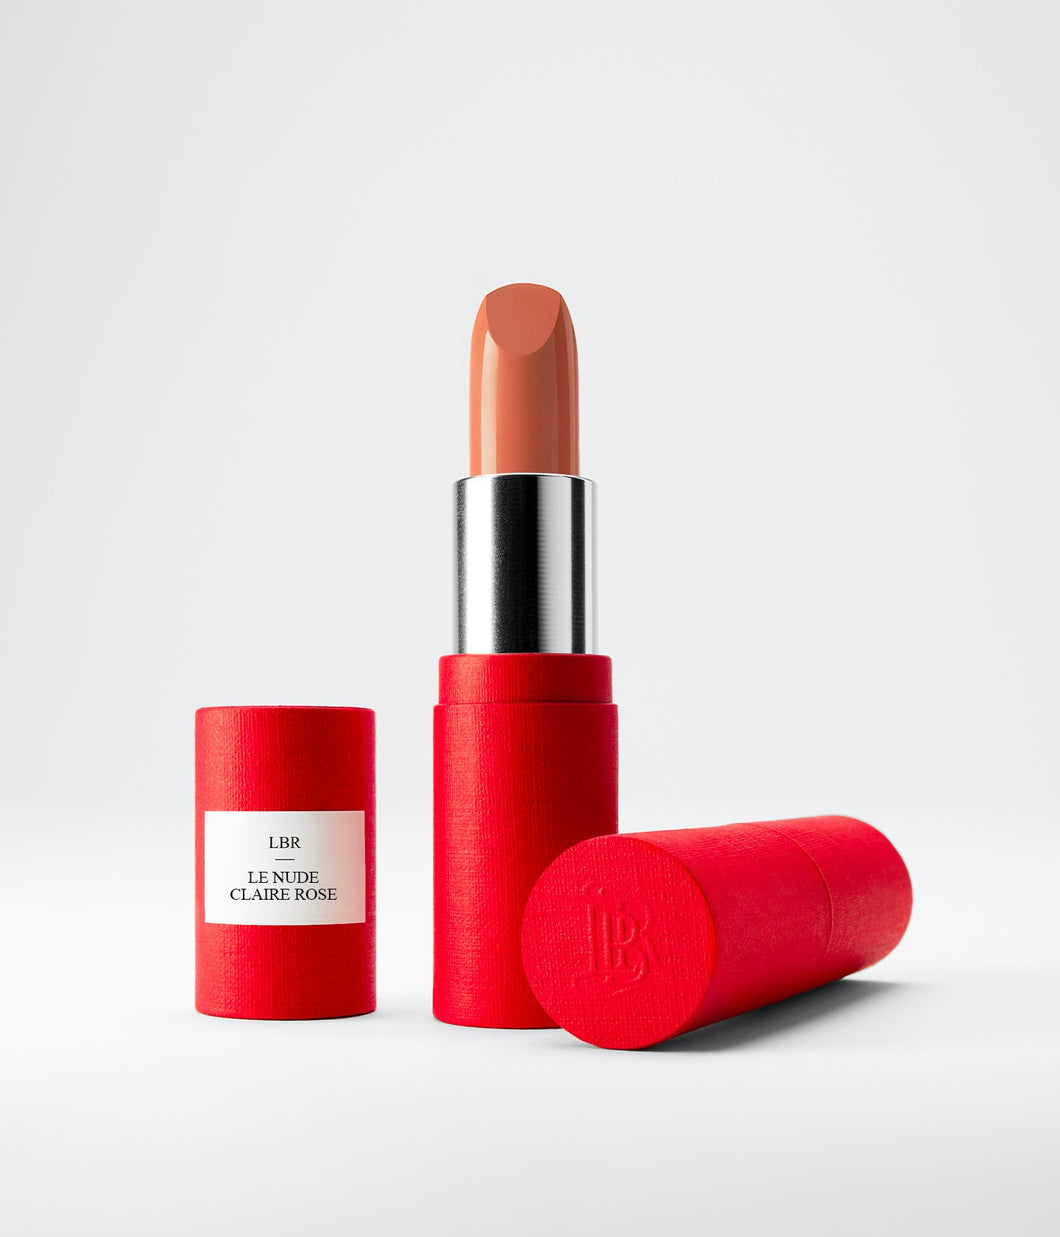 Le Nude Claire Rose Lipstick Refill